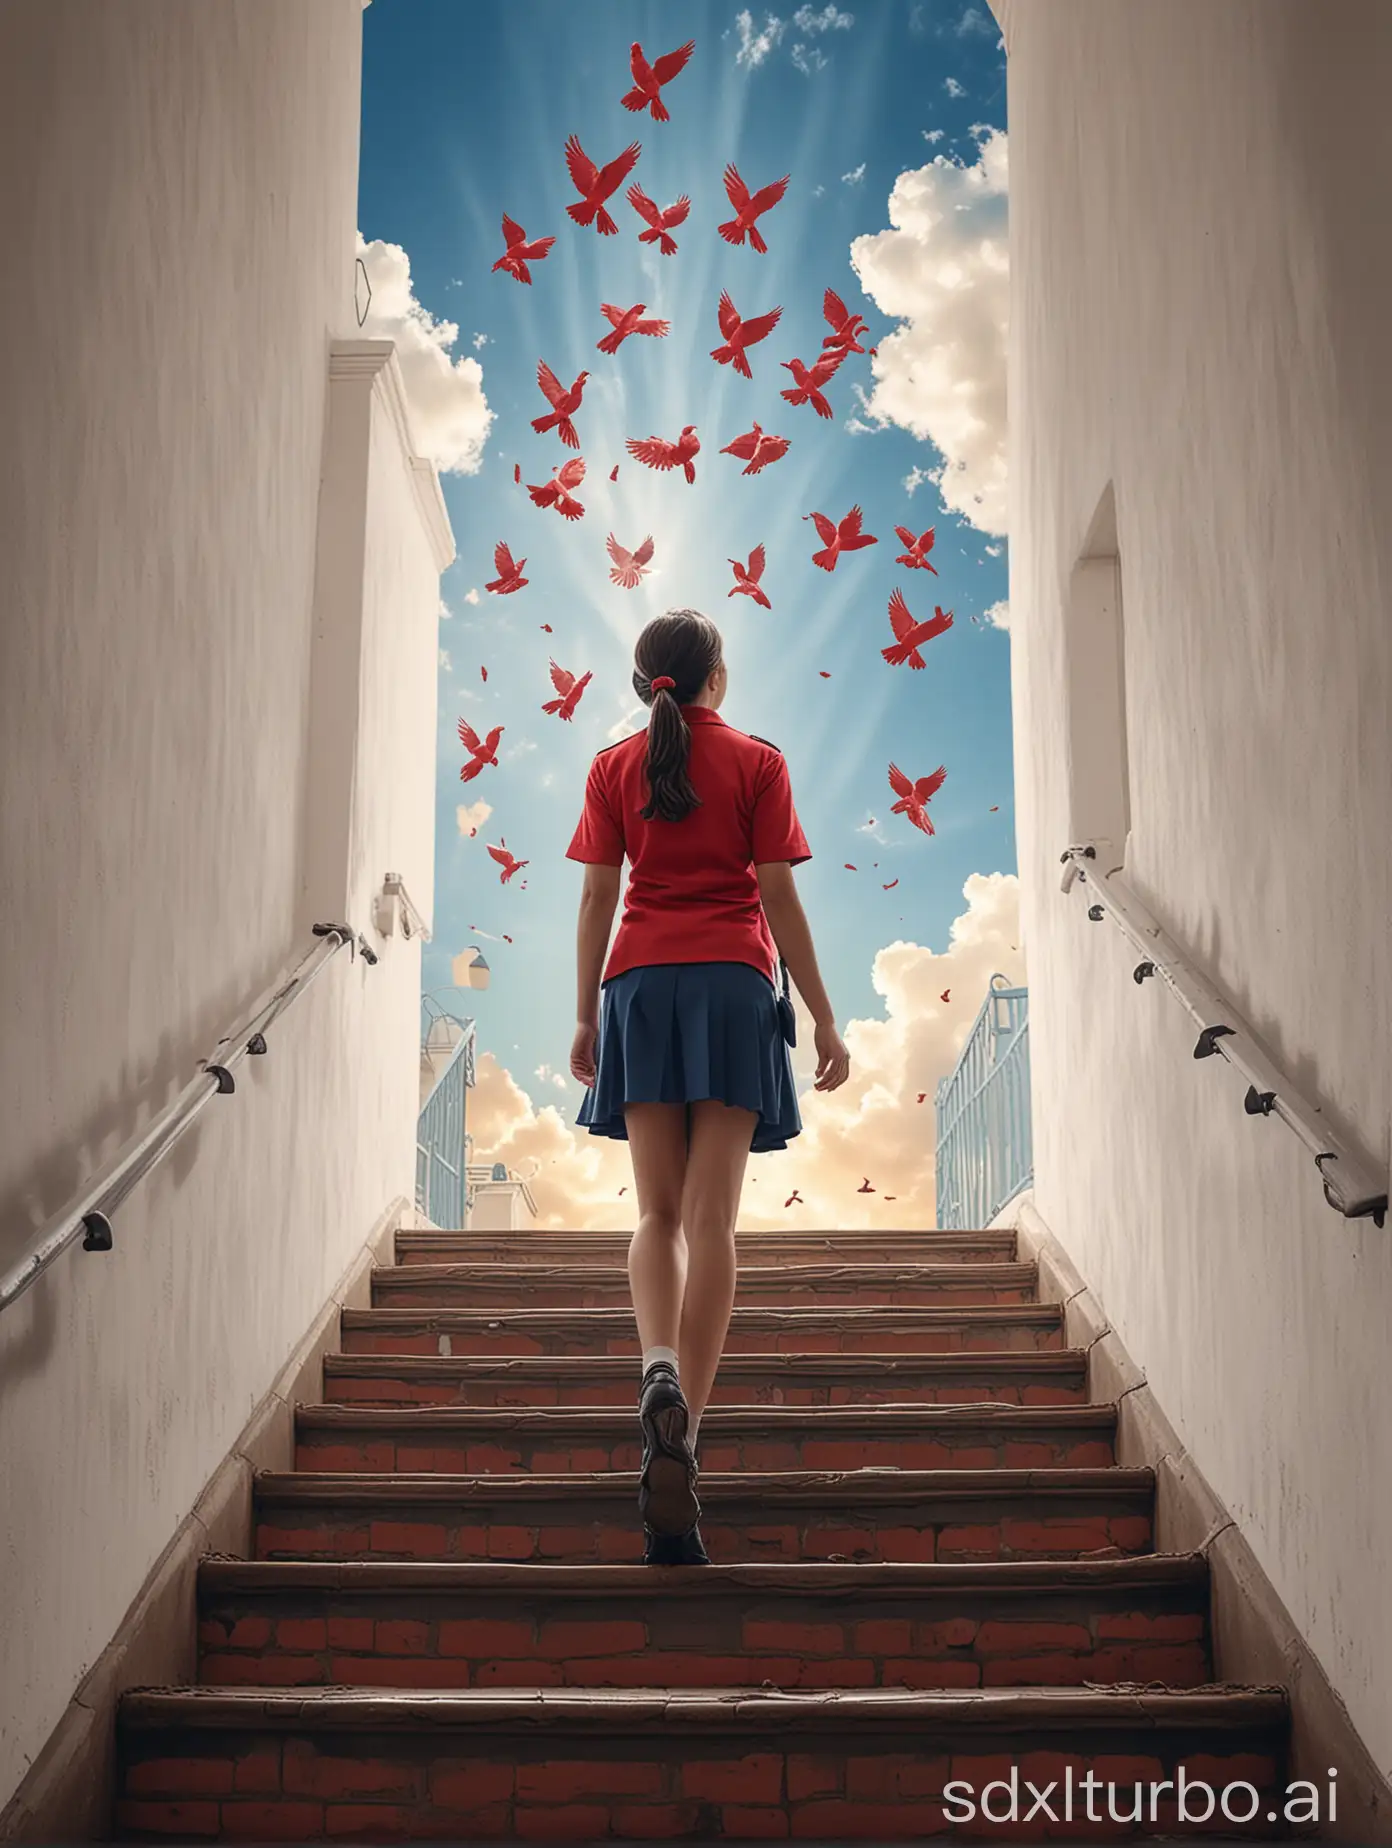 生成一张向家庭贫困学生宣传助学贷款的海报，画面内容是一个穿着校服的女孩站在楼梯上仰望天空，天空中有三只不同大小的红色的和平鸽剪影
海报上没有字
